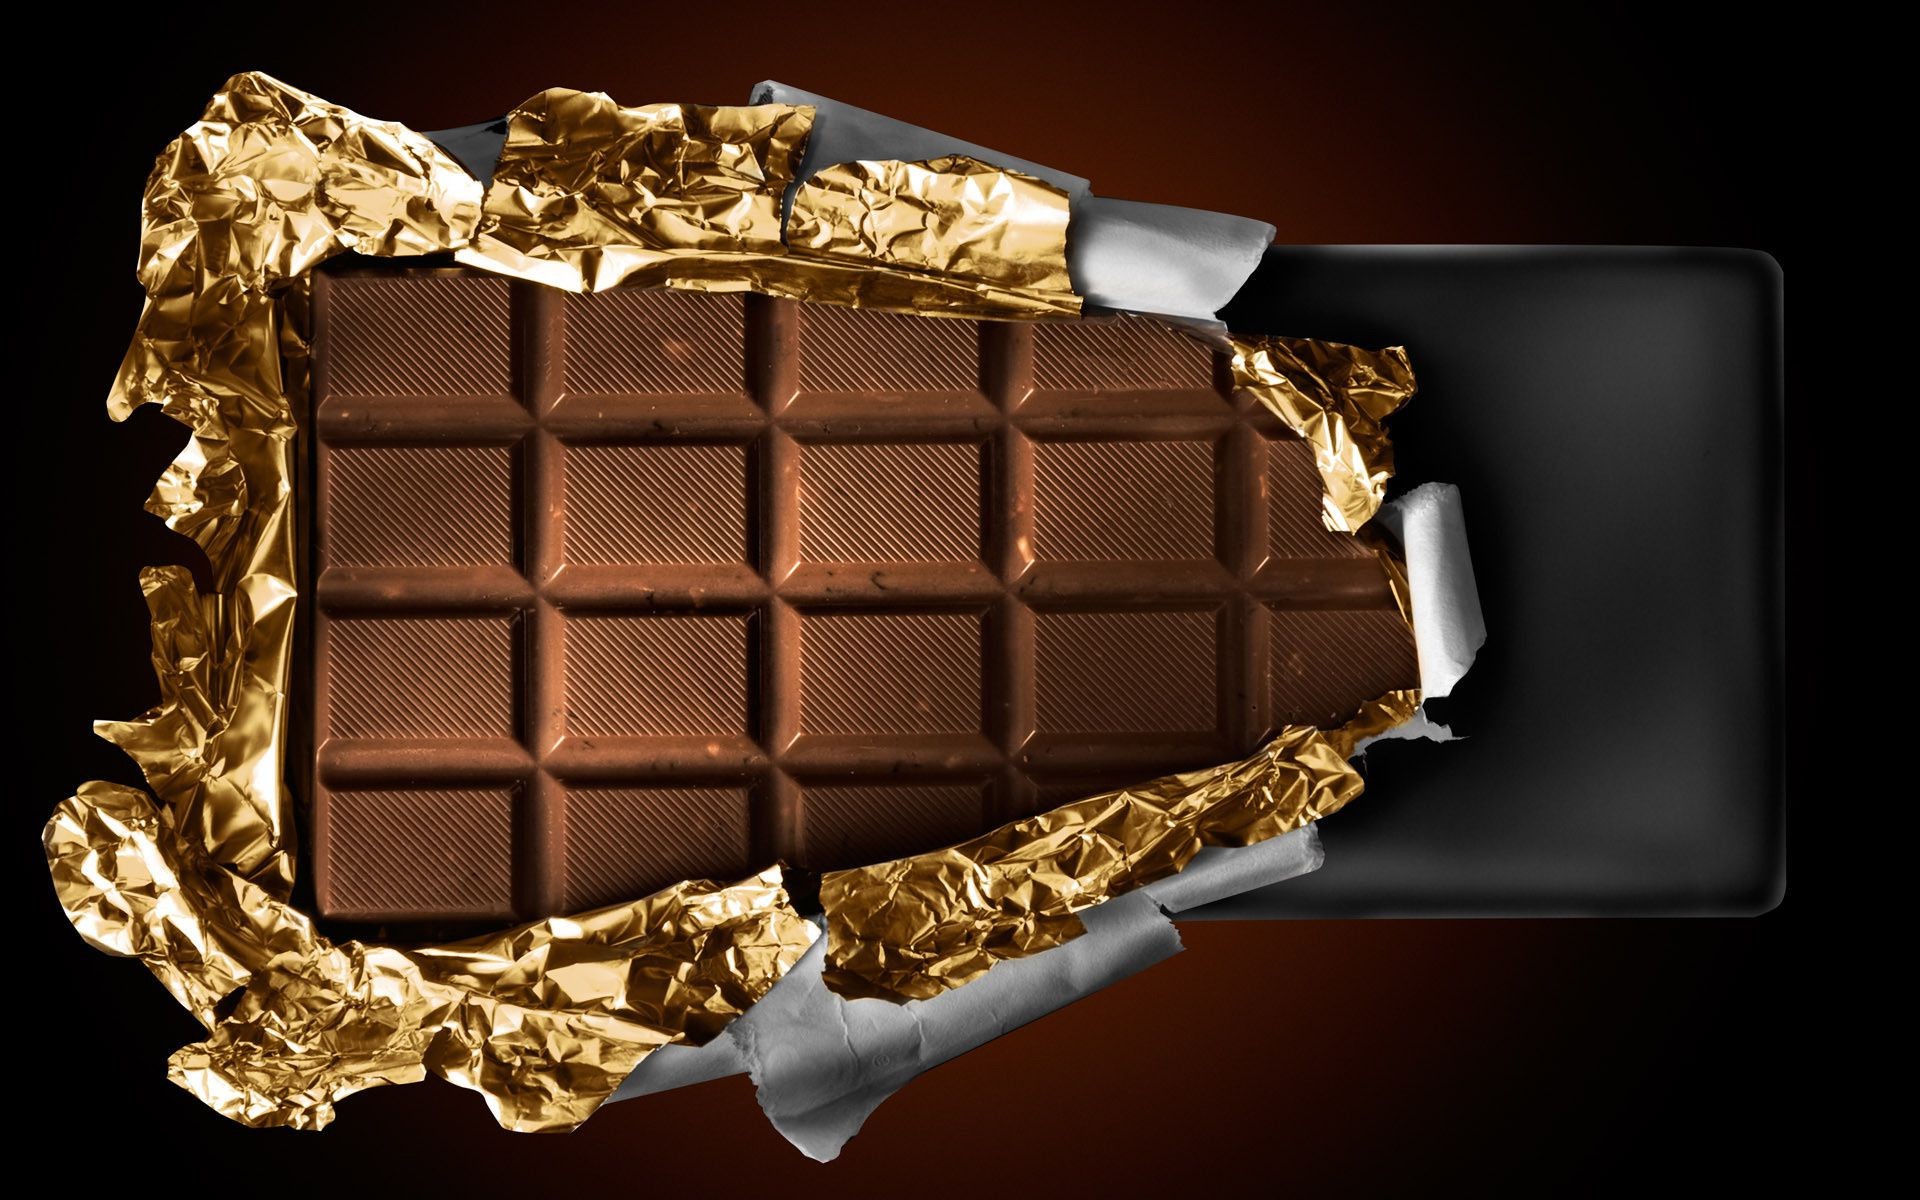 контрасты шоколад роскошные темный золото конфеты рабочего стола сладкий еда искушение зависимость